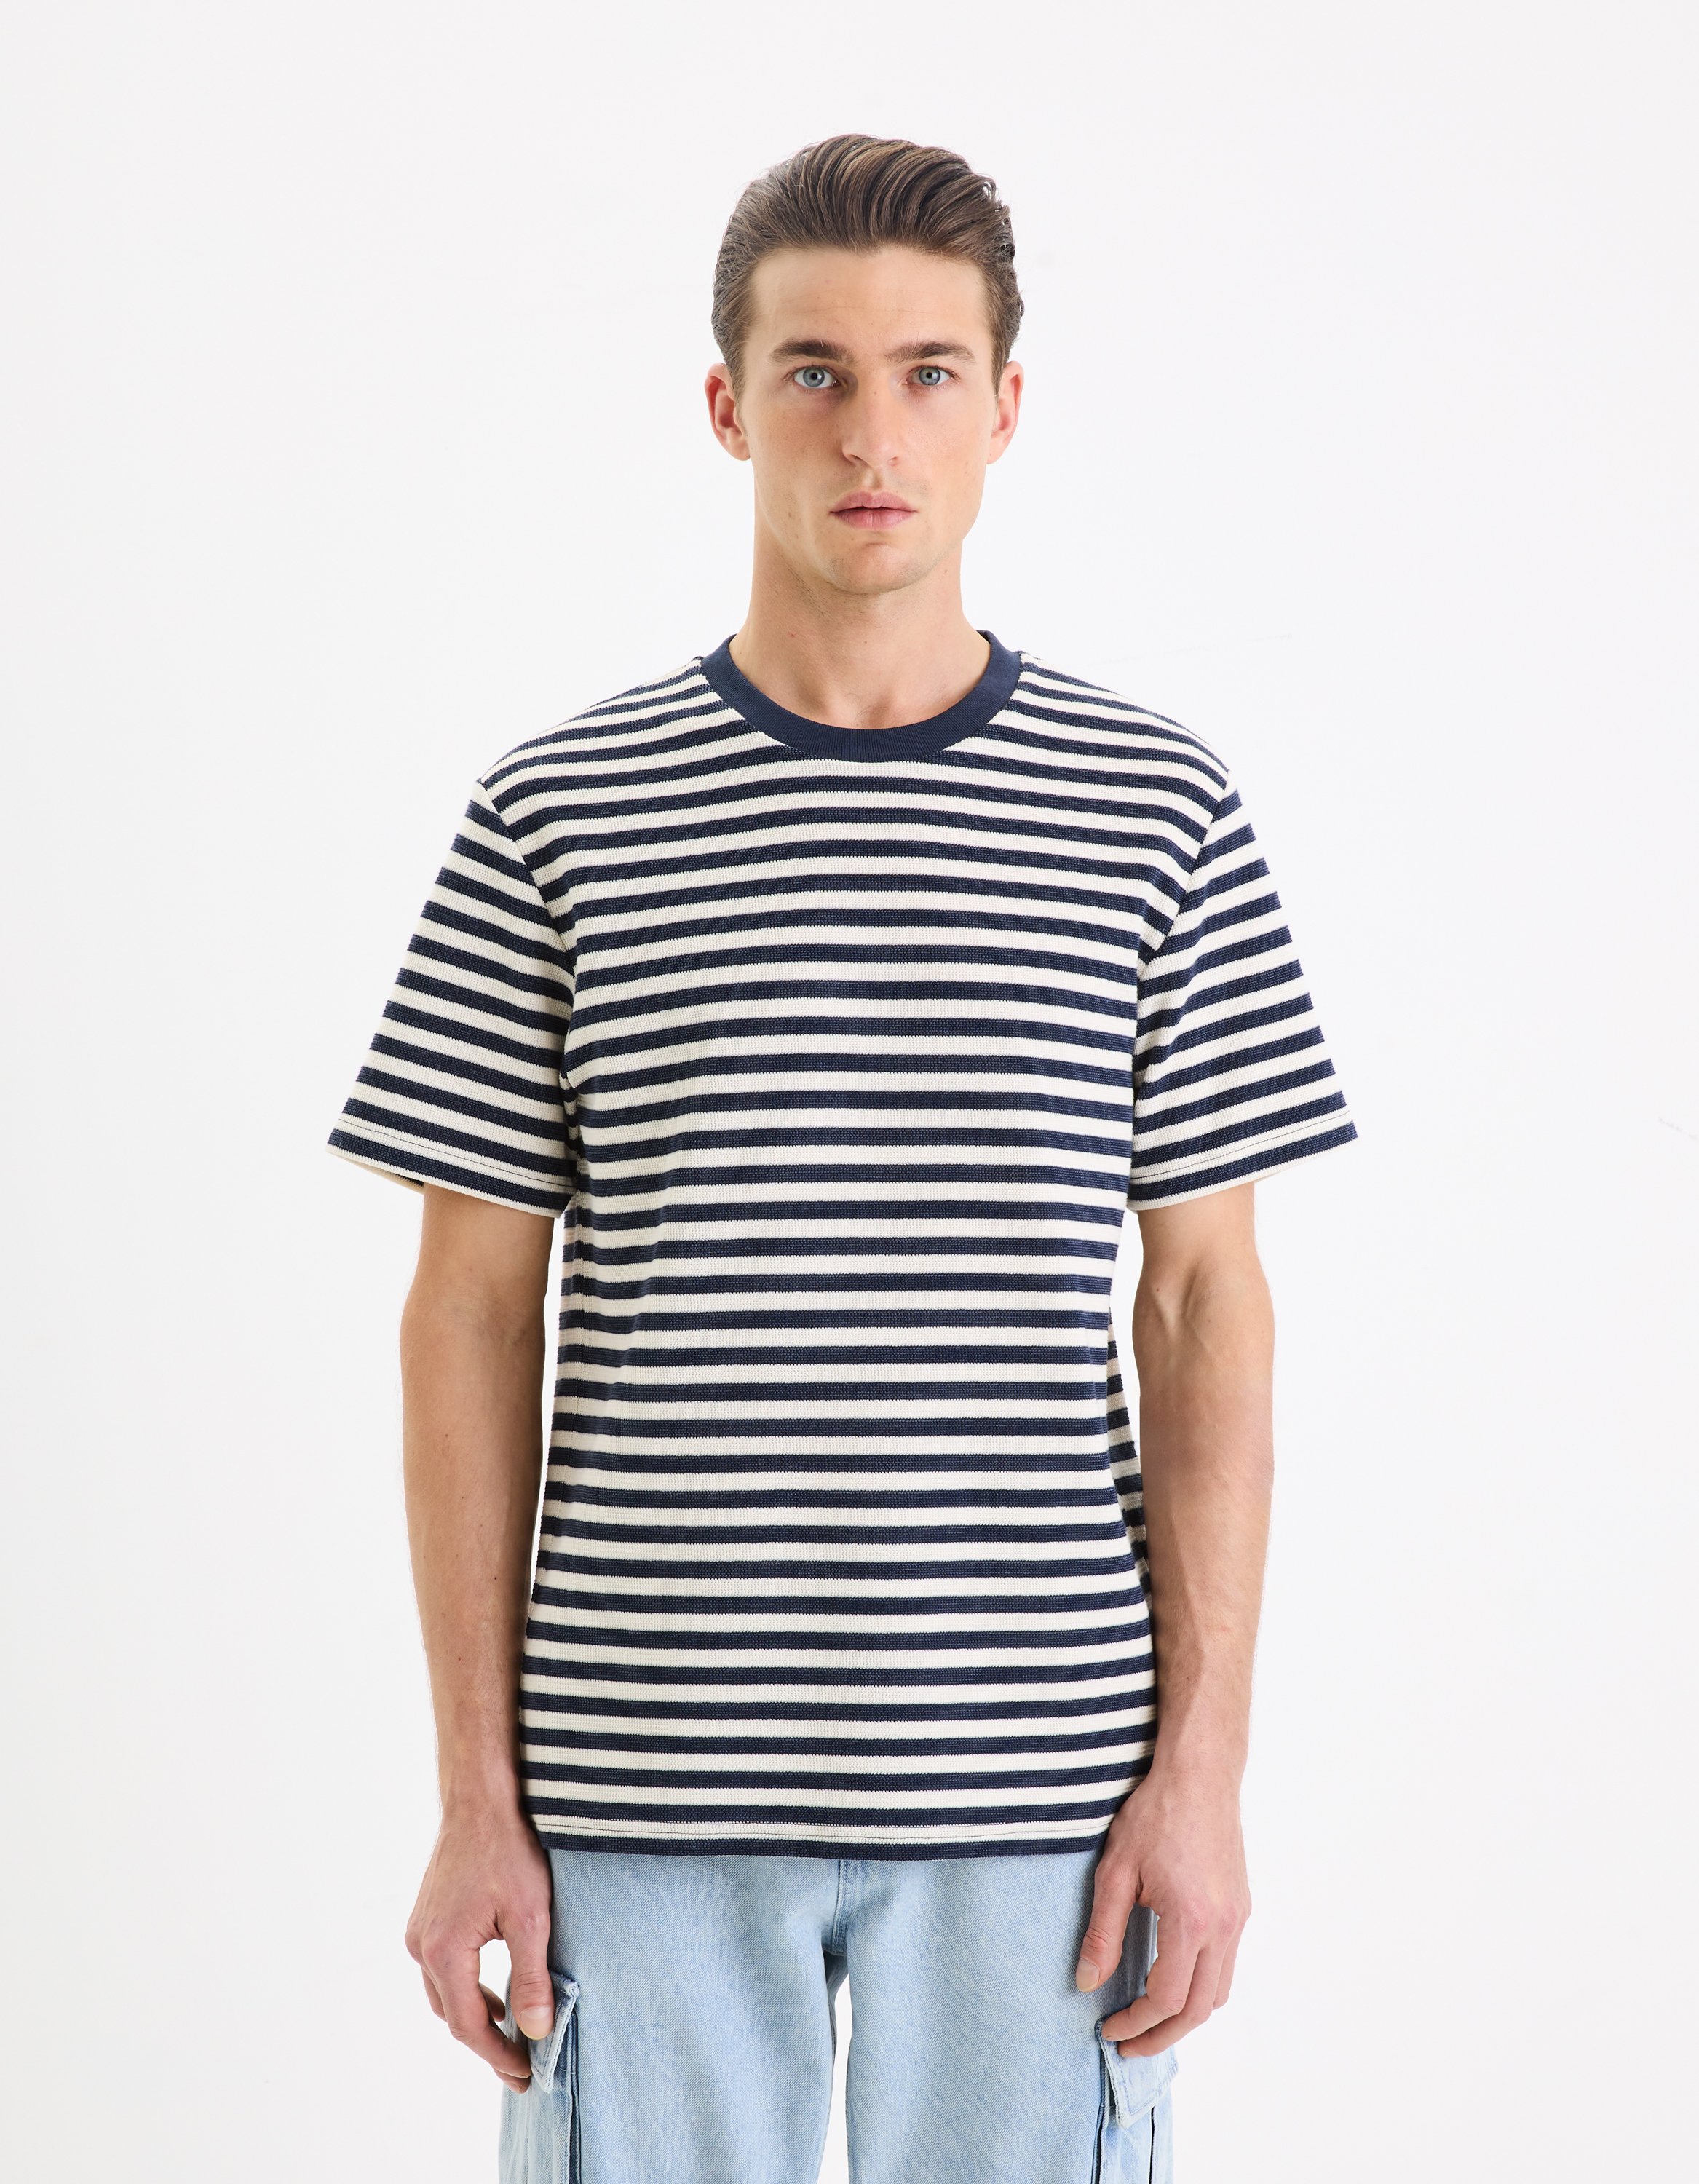 Celio Striped T-Shirt Gefab - Men's